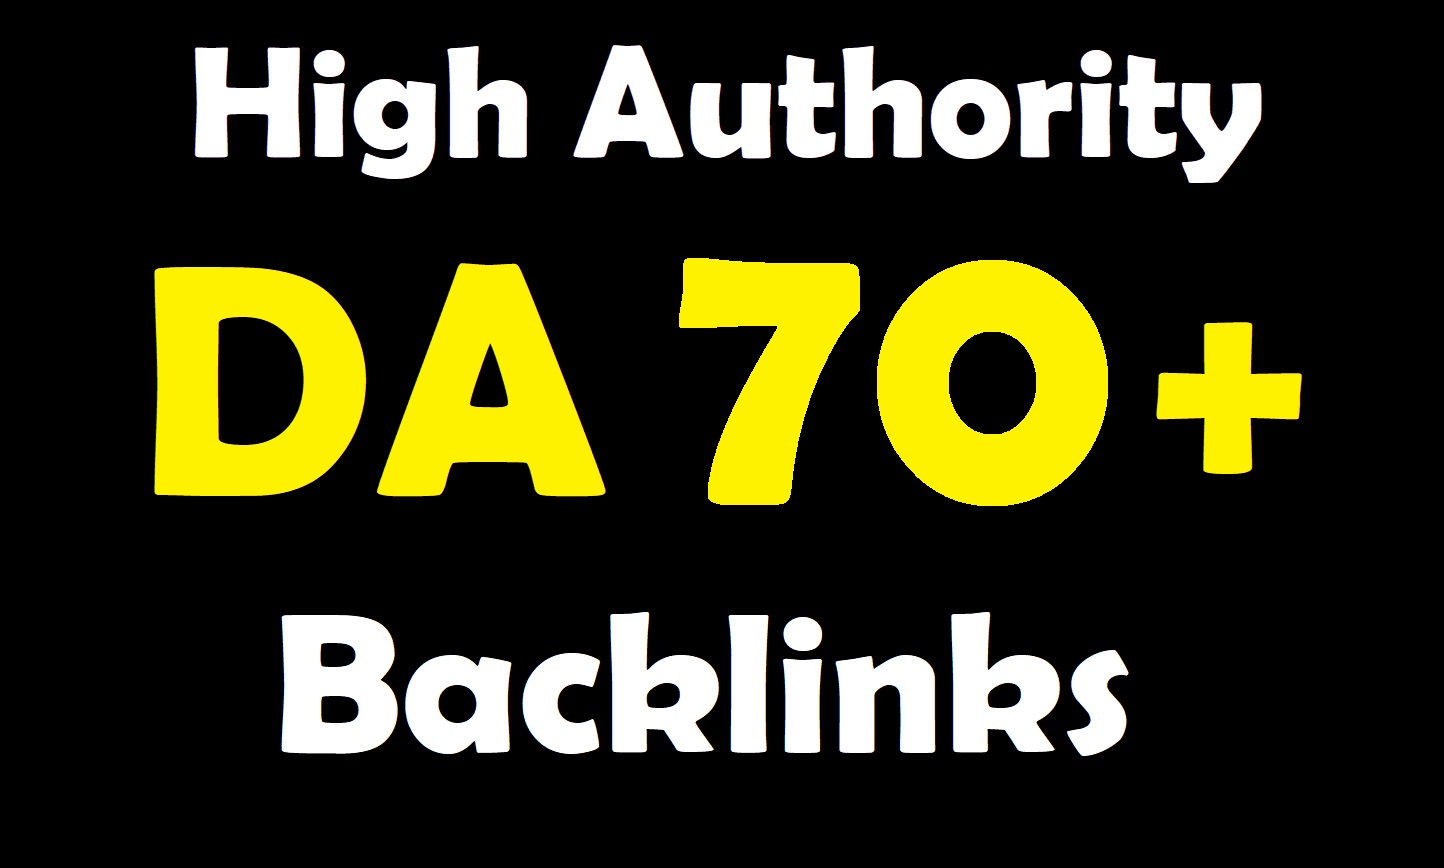 Create manually 25 high da baclinks on da 70+ websites